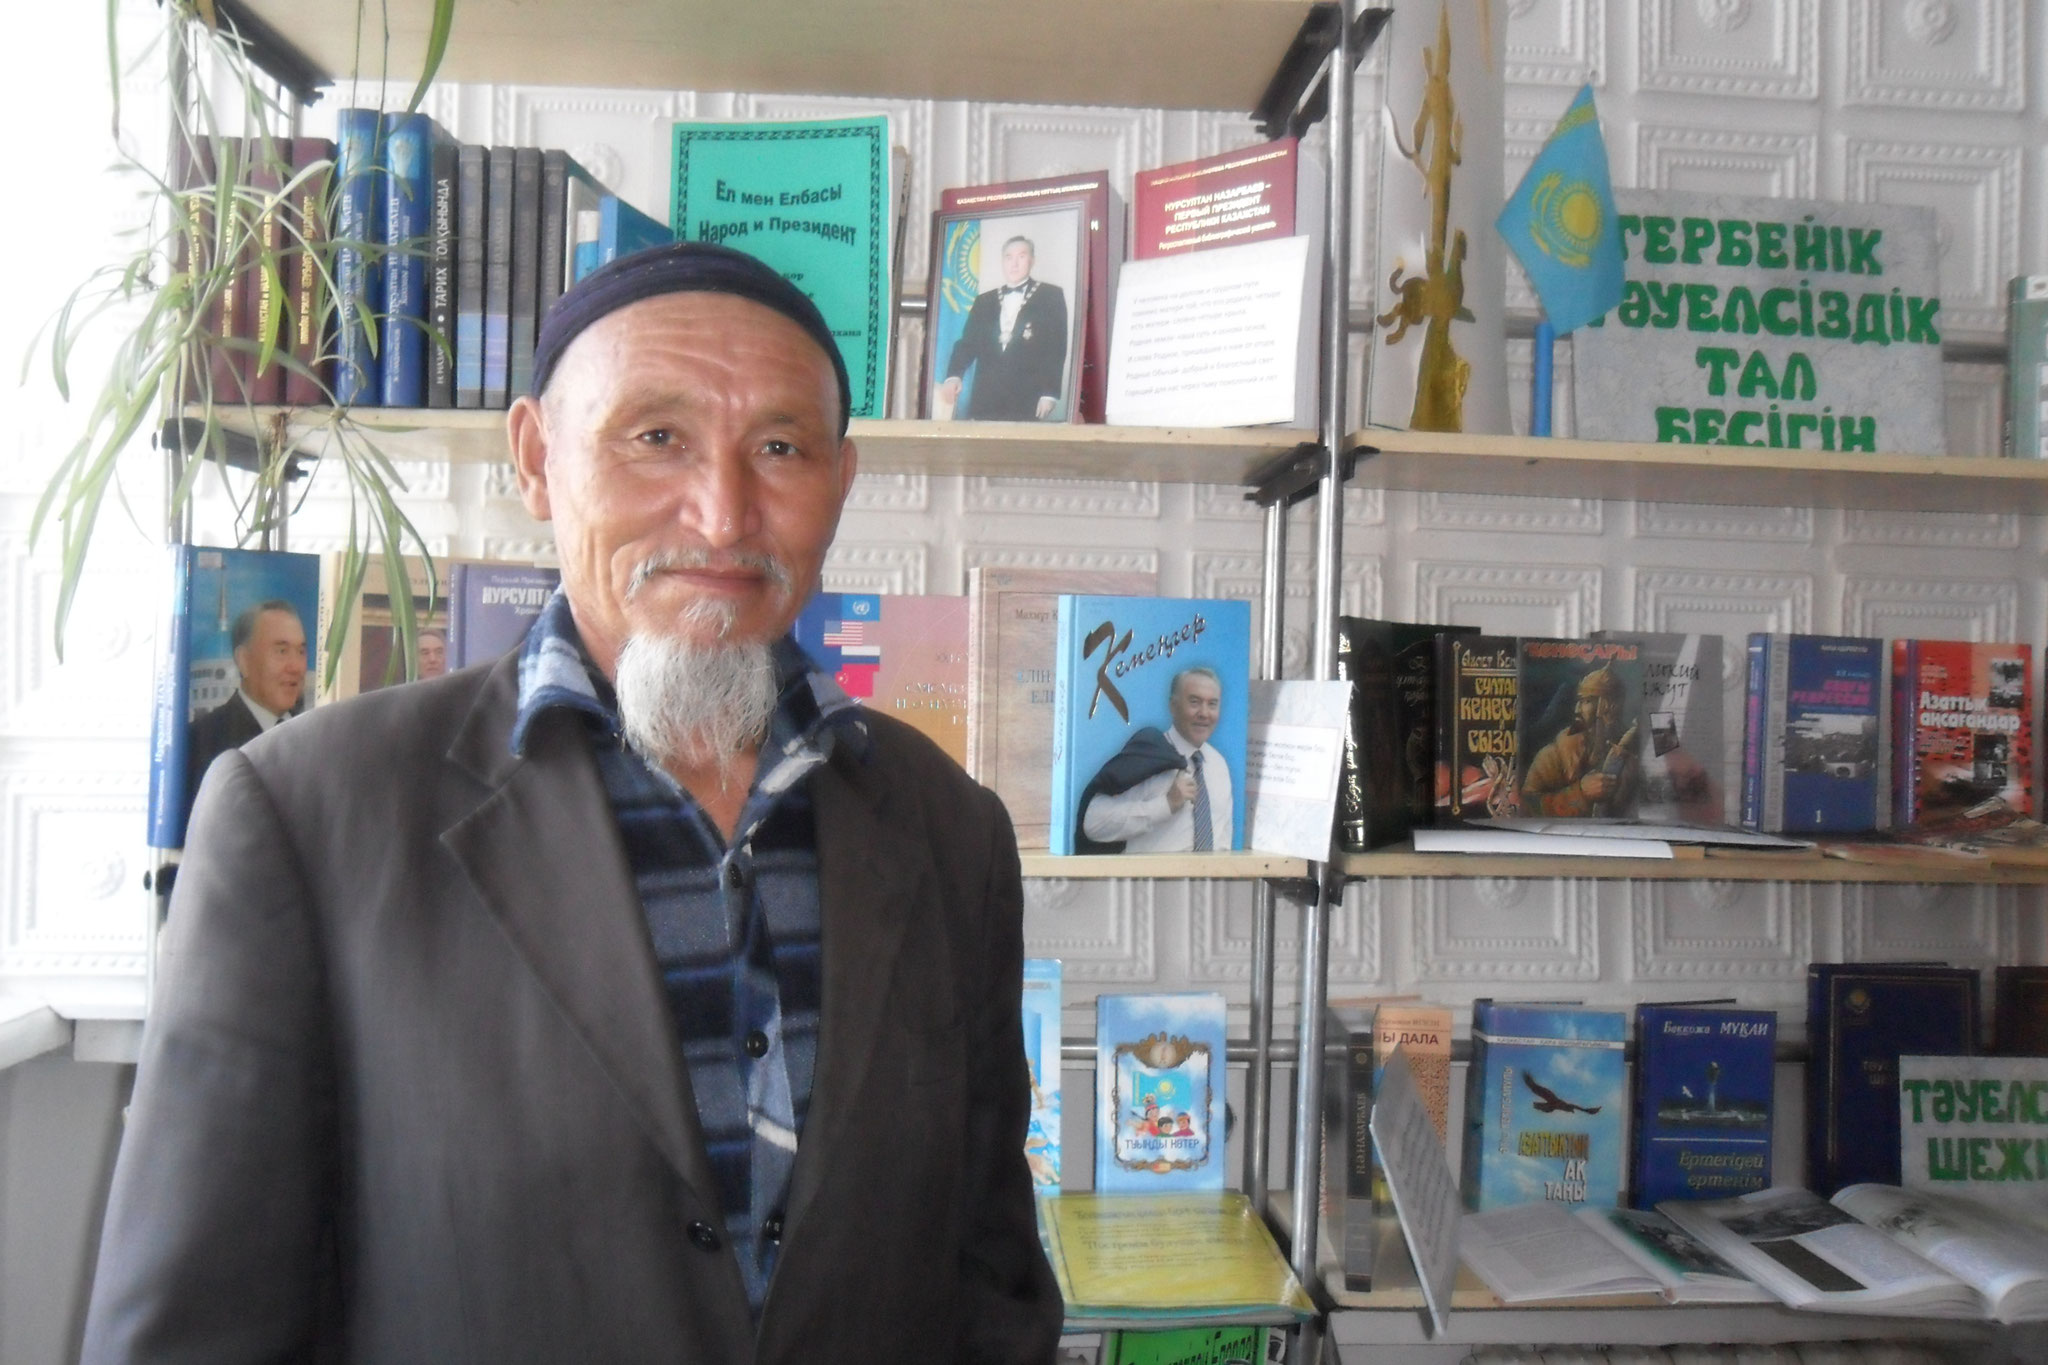 Докей Хуатжан, постоянный читатель и активист библиотеки